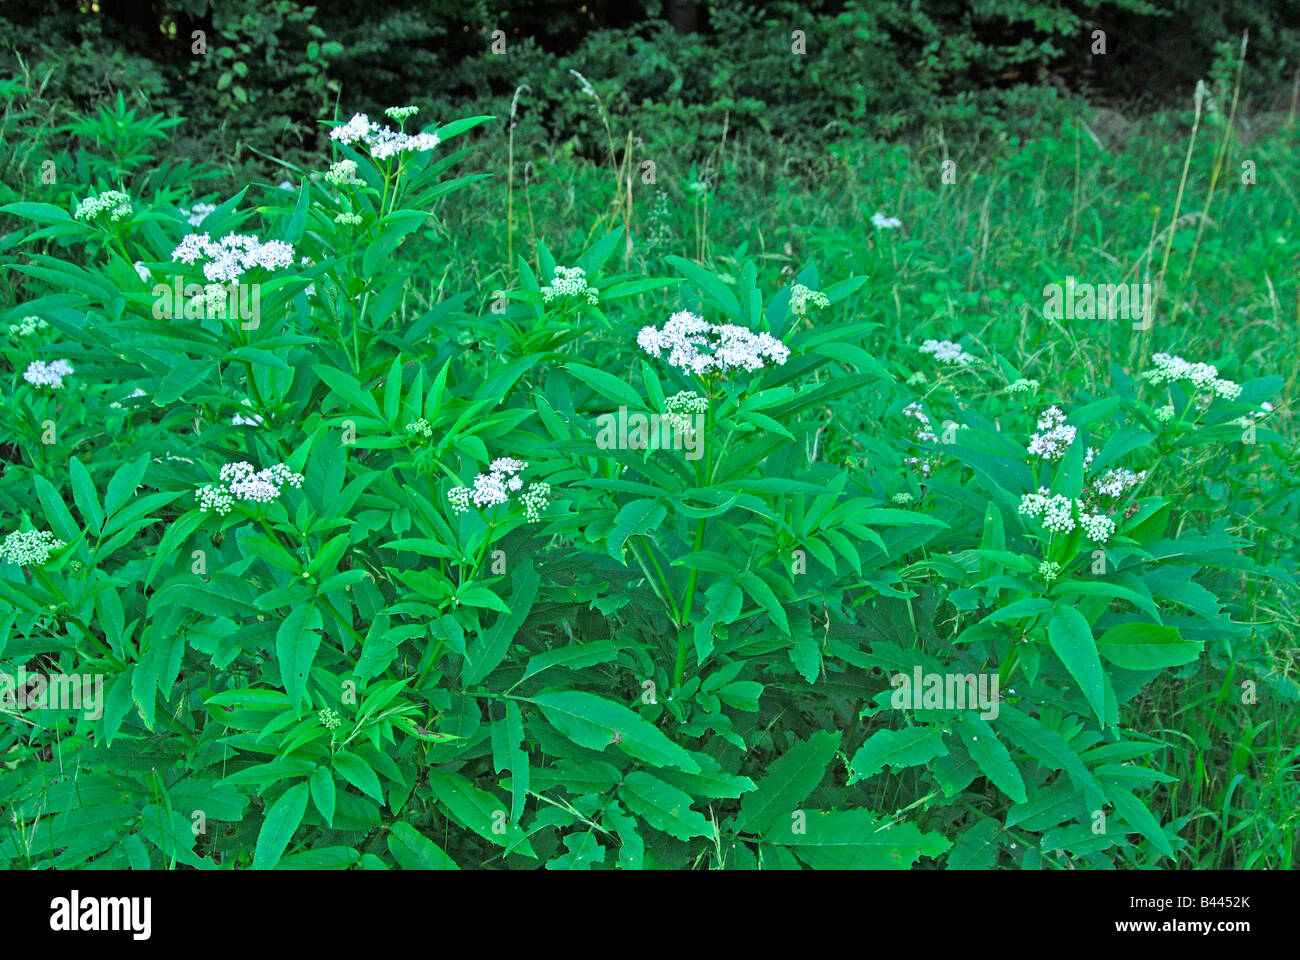 Danewort Dwarf Elder European Dwarf Elder Walewort (Sambucus ebulus) flowering Stock Photo